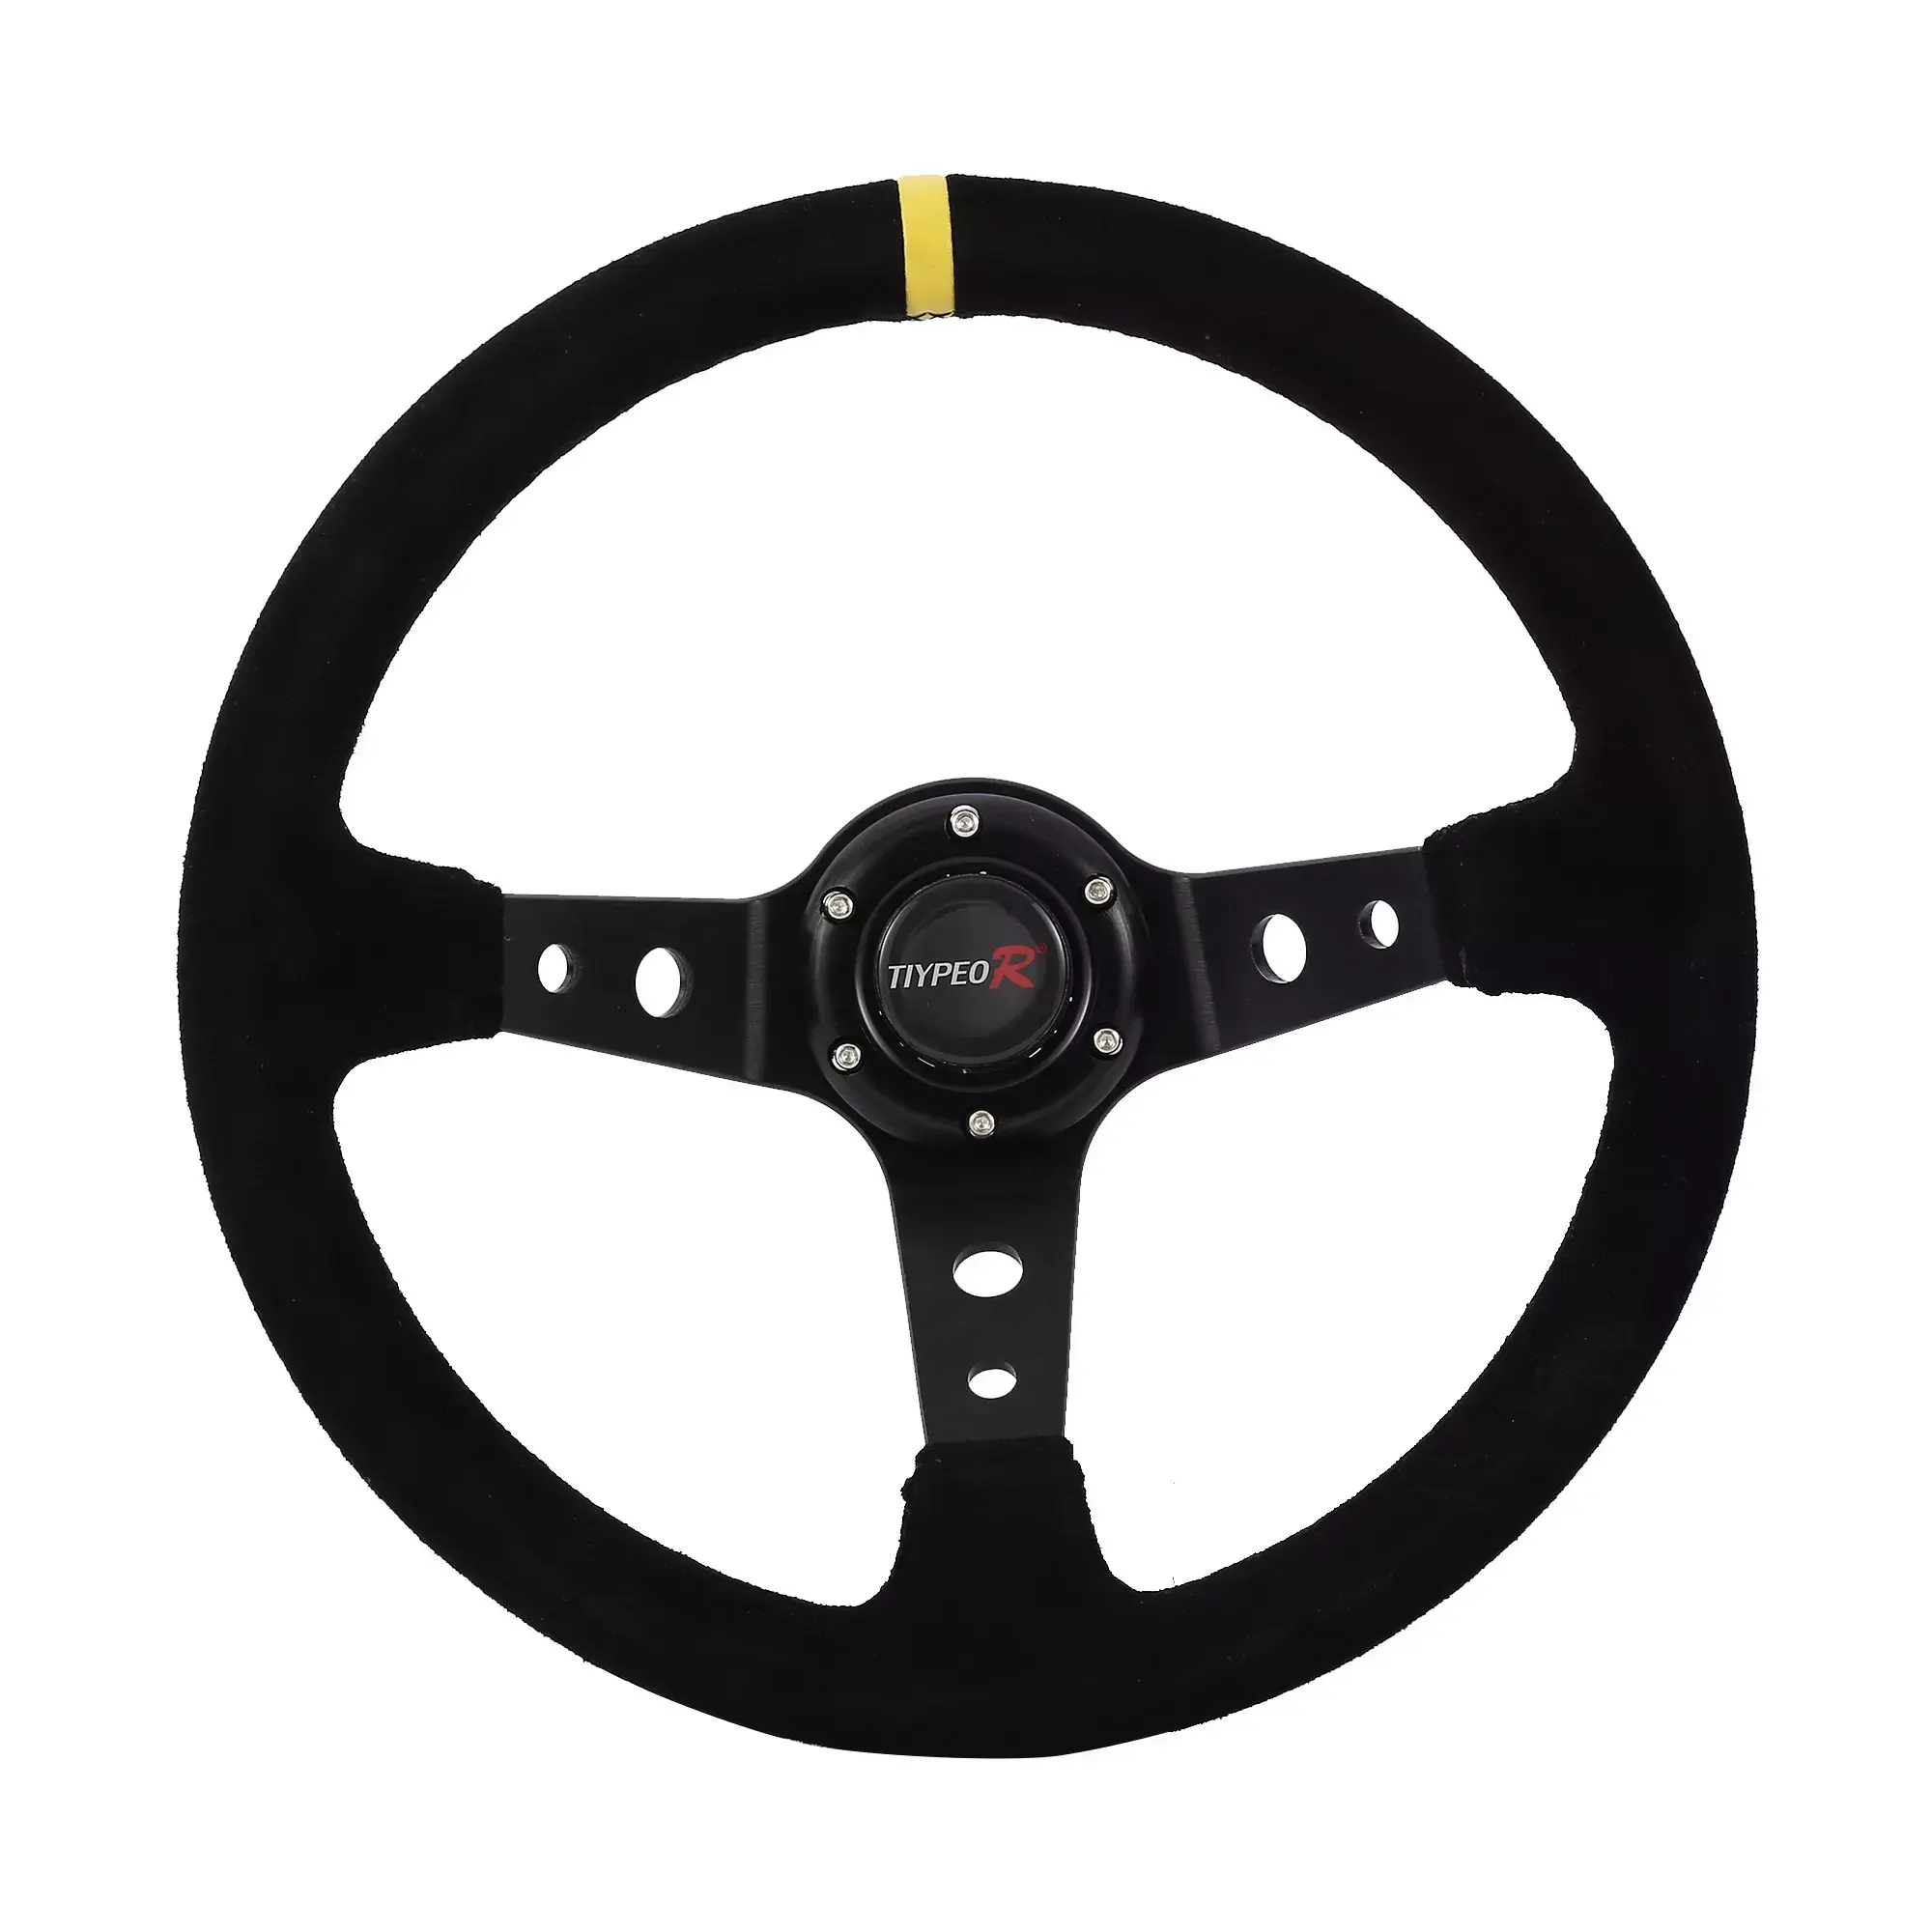 Customized logo suede leather racing steering wheel Modified universal steering wheel 350mm car steering wheel